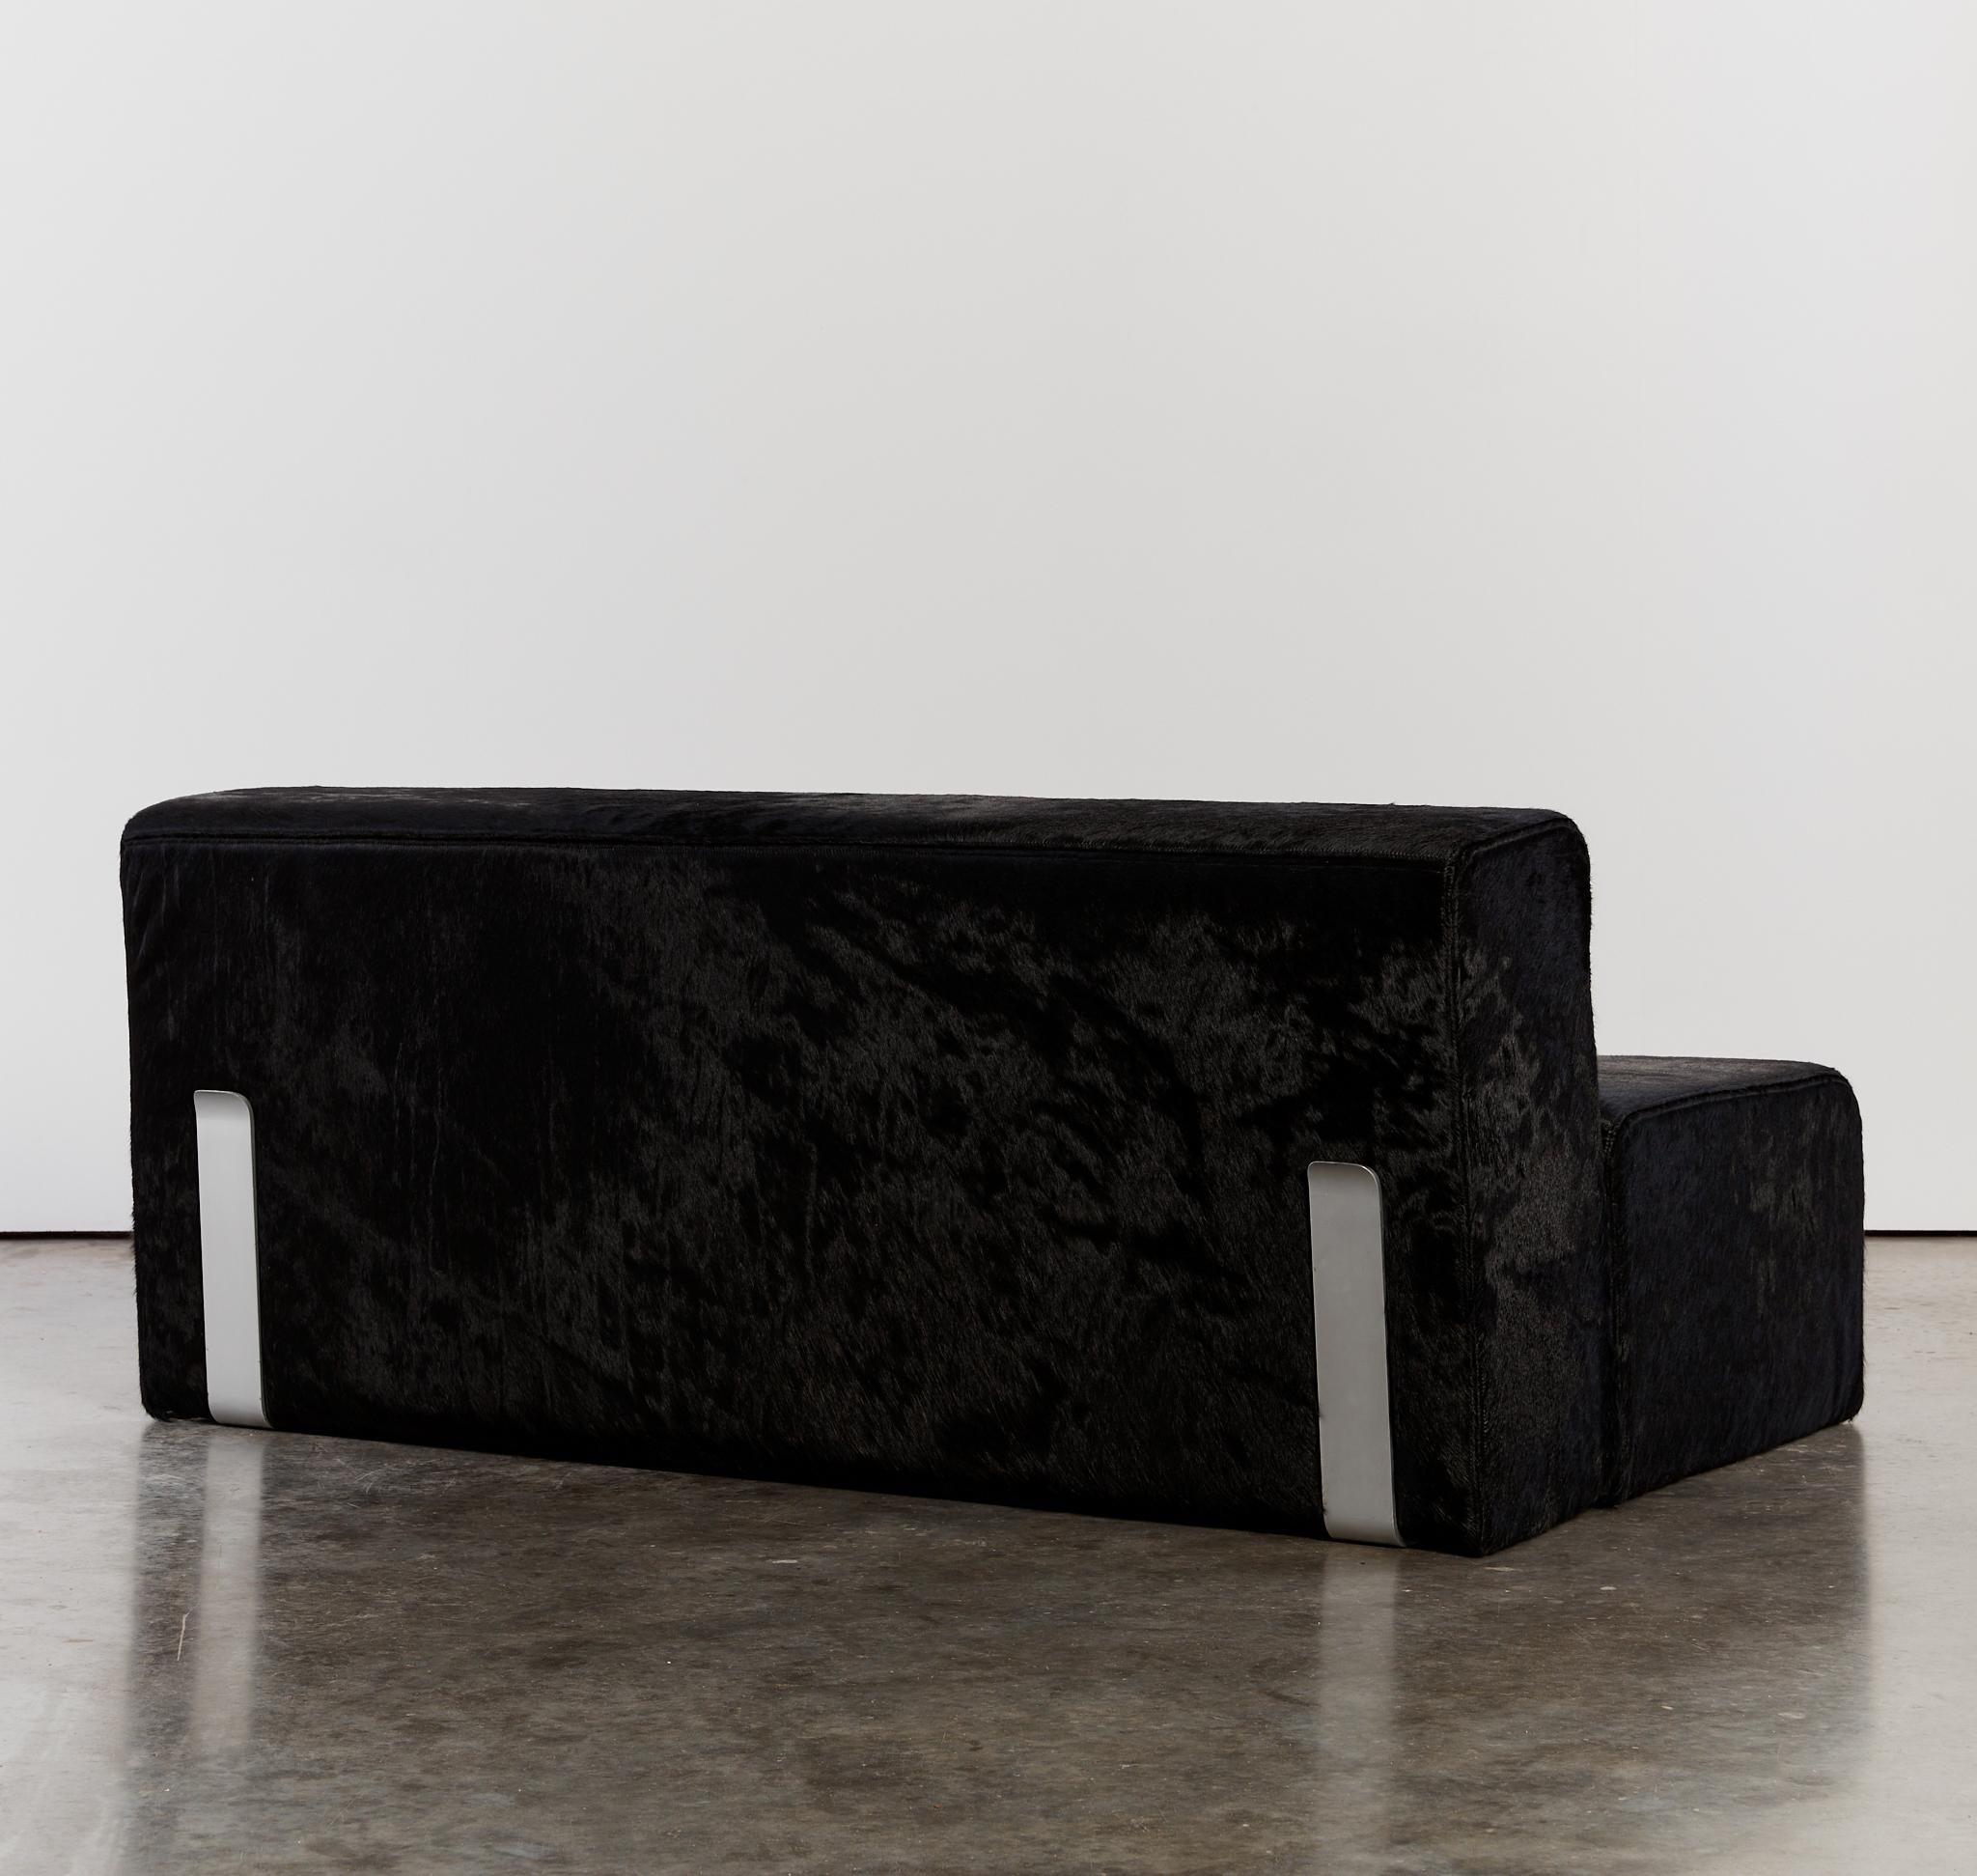 Aluminum Marcel sofa settee by Kazuhide Takahama for Gavina reupholstered in hair on hide For Sale